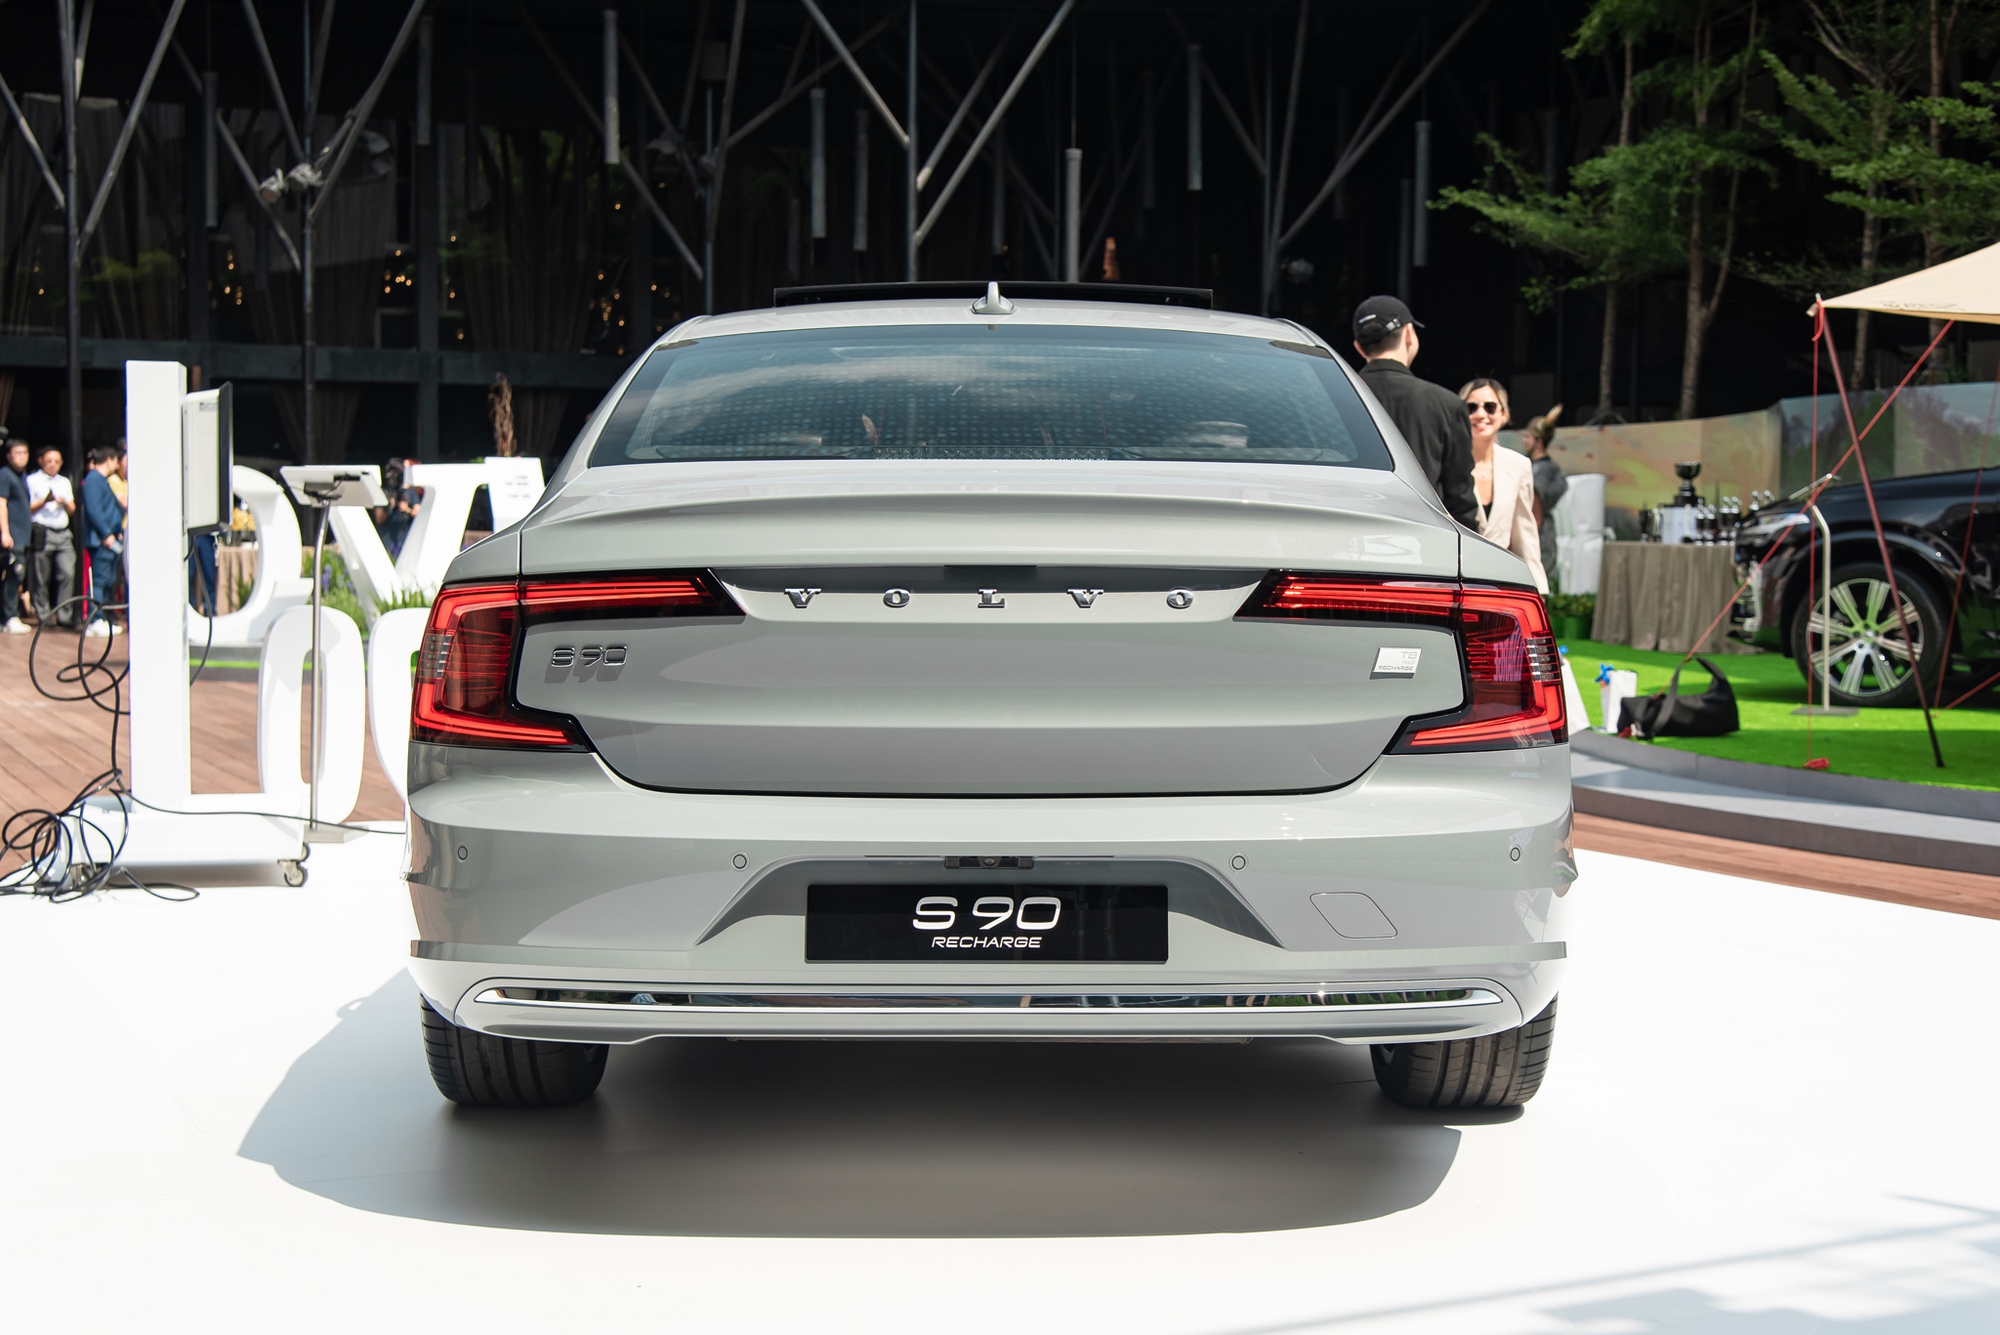 Chi tiết Volvo S90 Recharge vừa ra mắt: Giá 2,89 tỷ đồng, sedan hạng sang cỡ trung rộng và mạnh nhất Việt Nam- Ảnh 10.